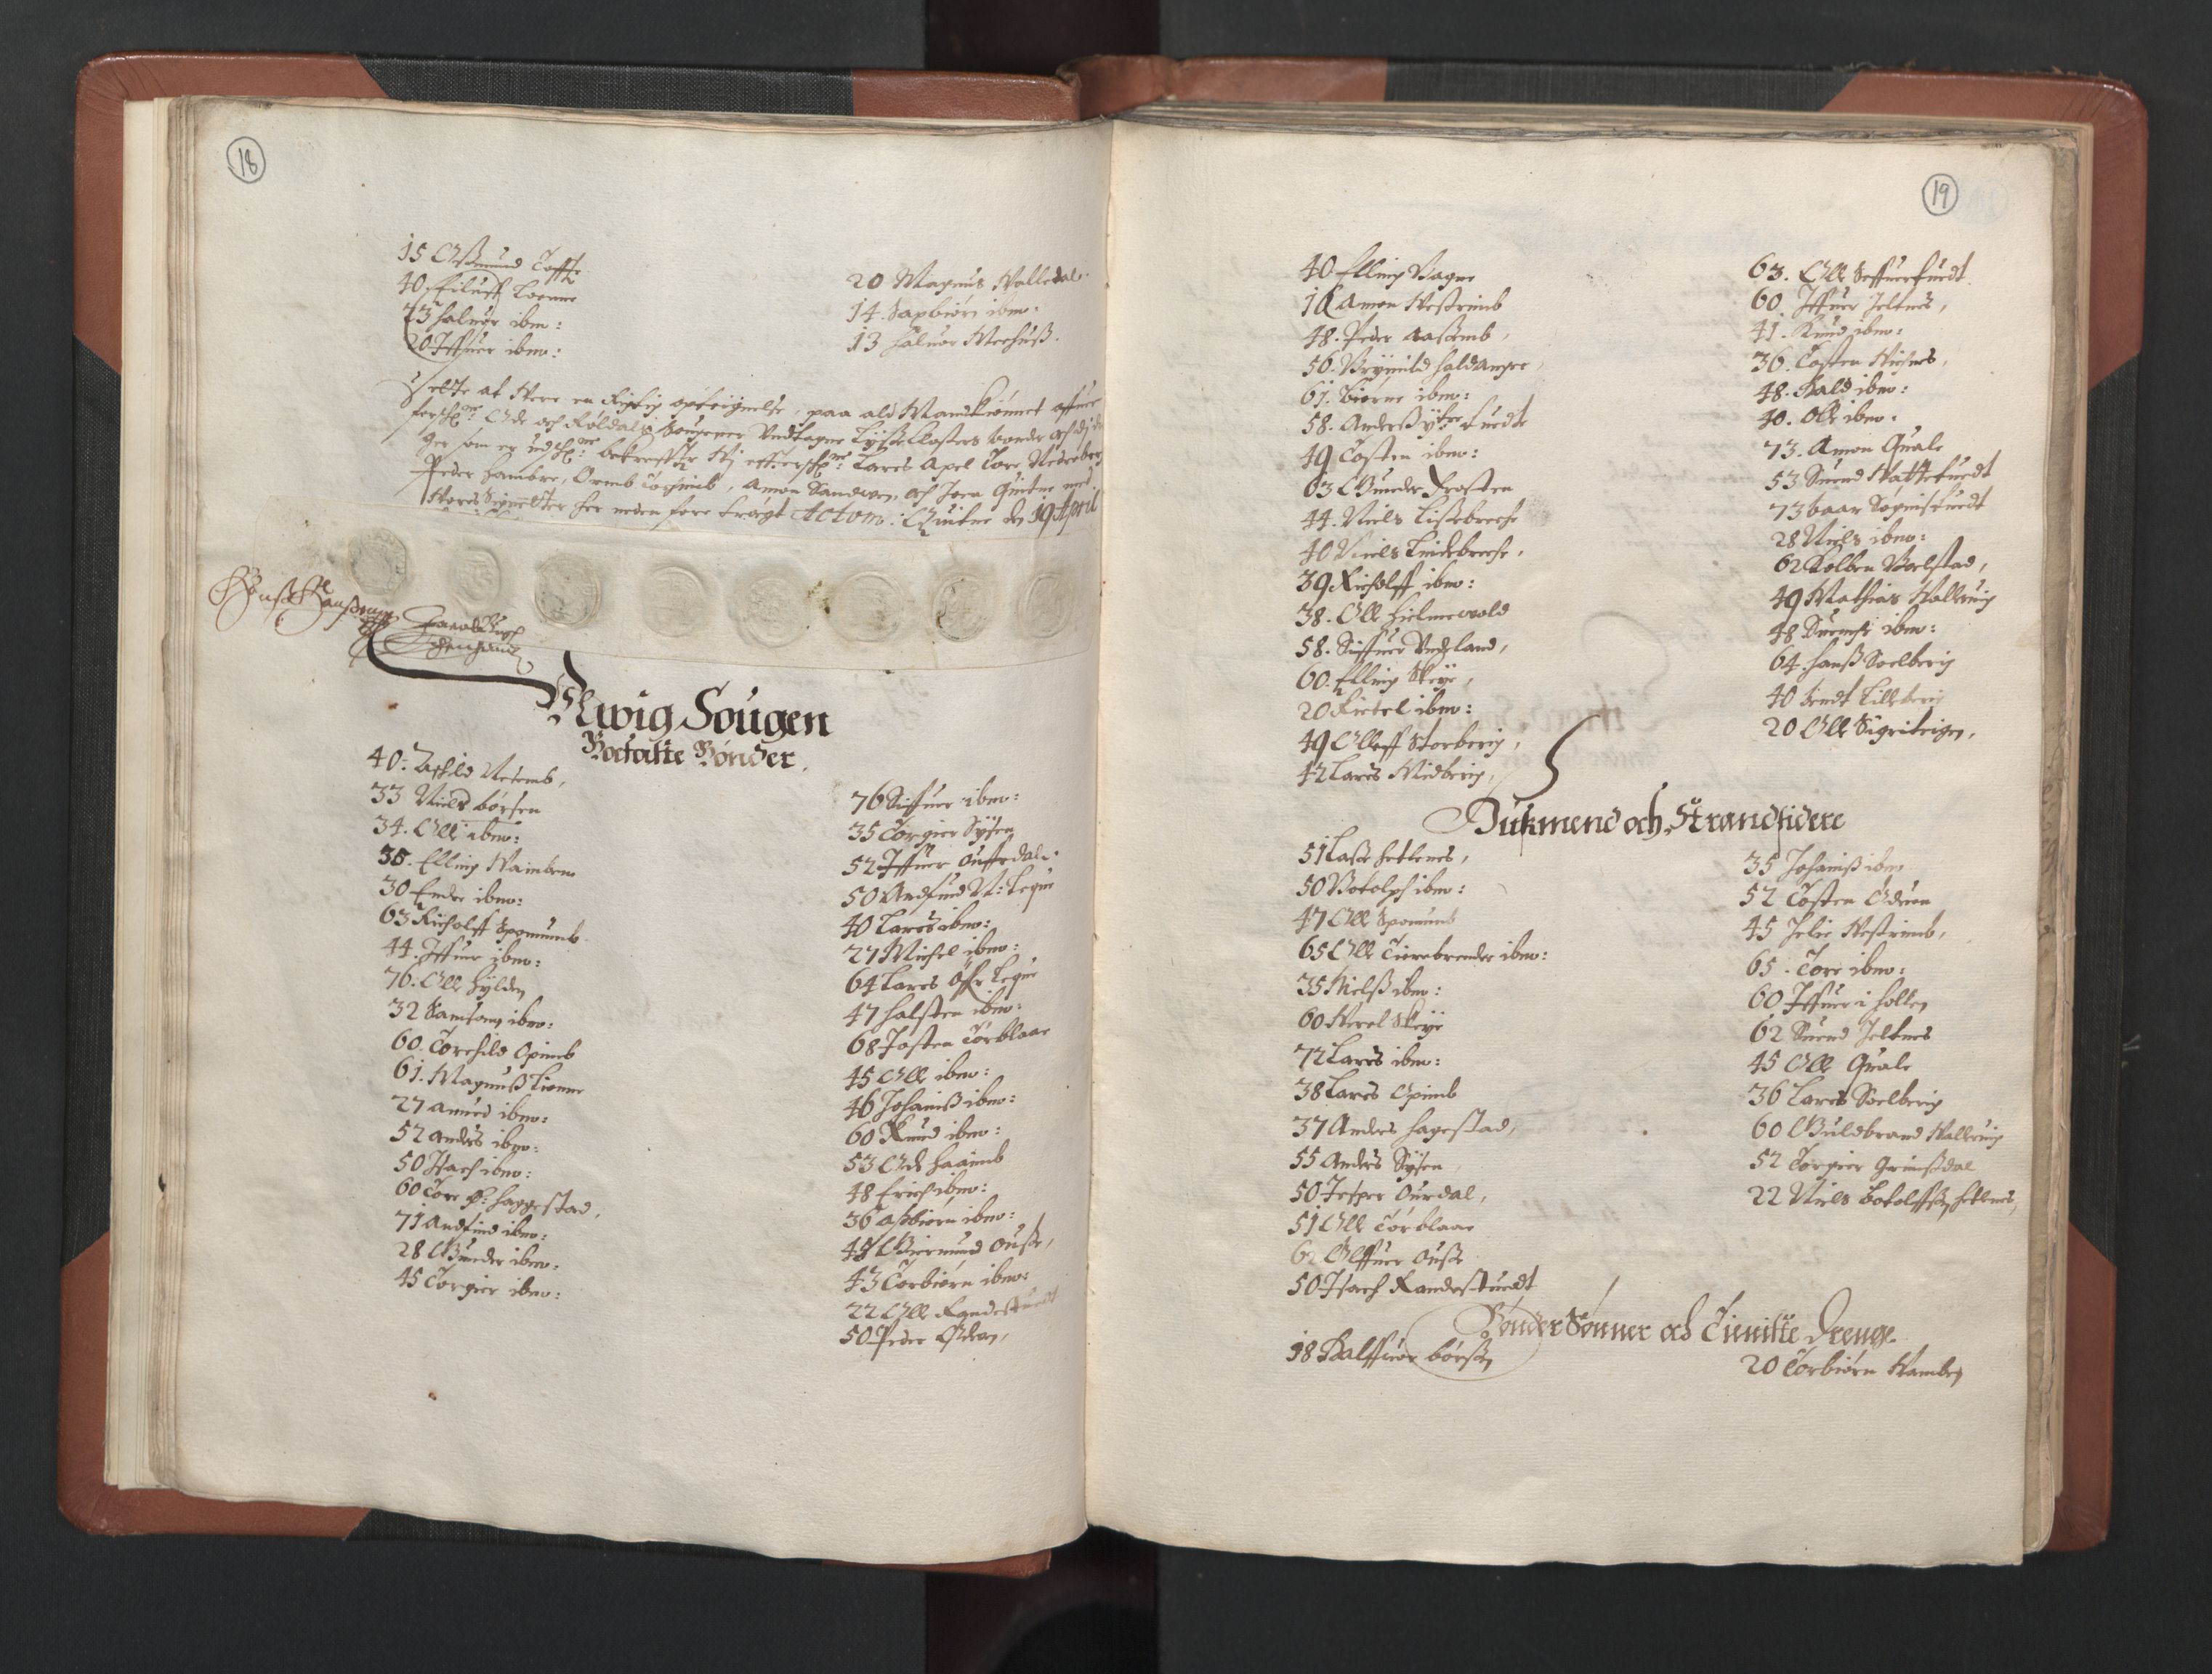 RA, Bailiff's Census 1664-1666, no. 14: Hardanger len, Ytre Sogn fogderi and Indre Sogn fogderi, 1664-1665, p. 18-19